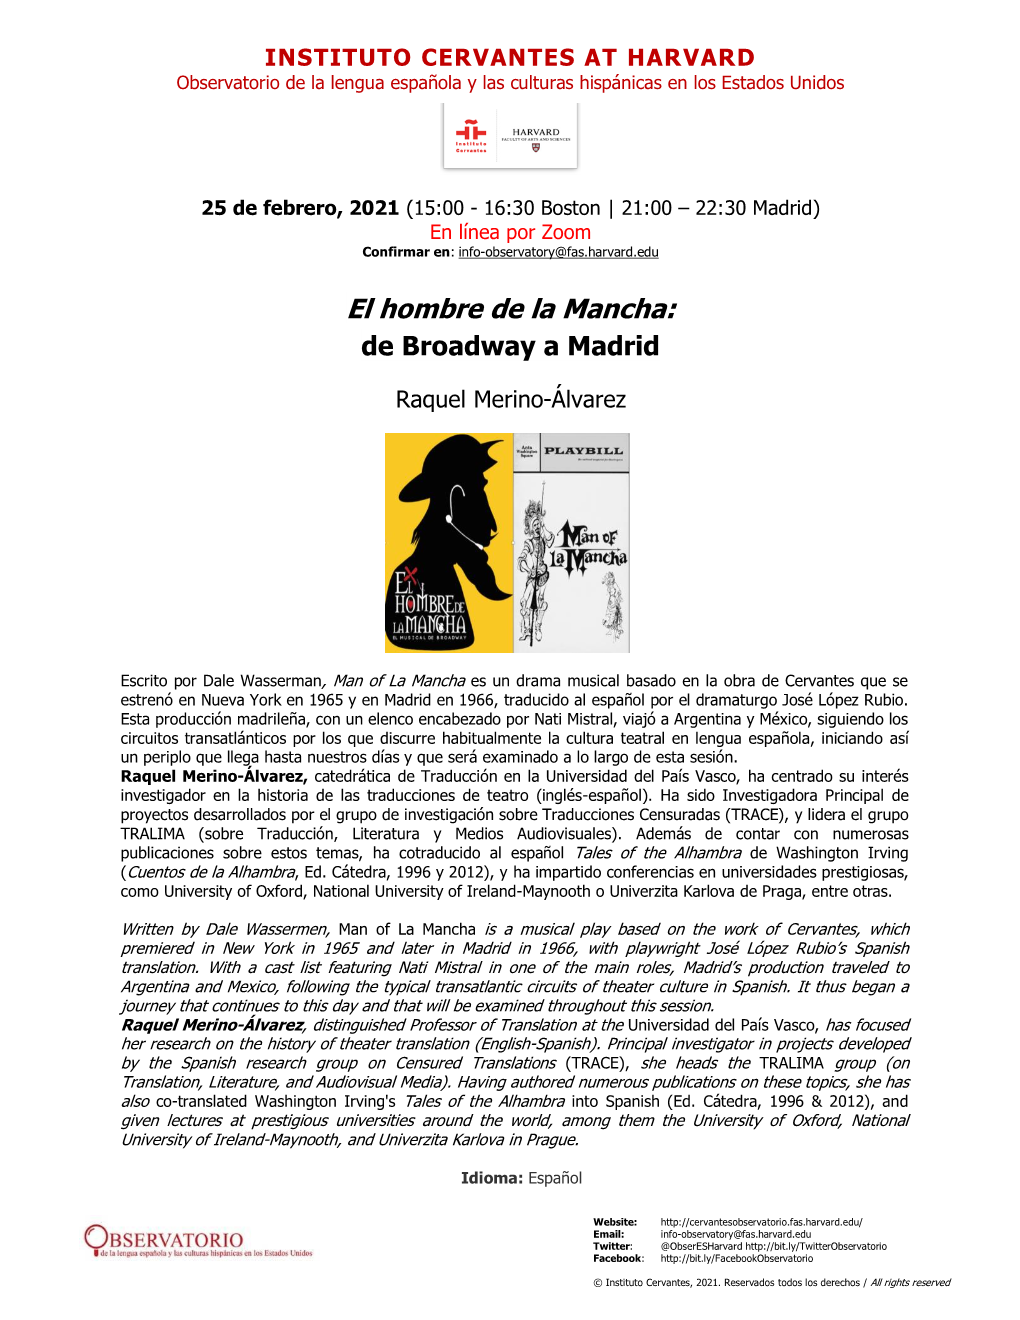 El Hombre De La Mancha: De Broadway a Madrid